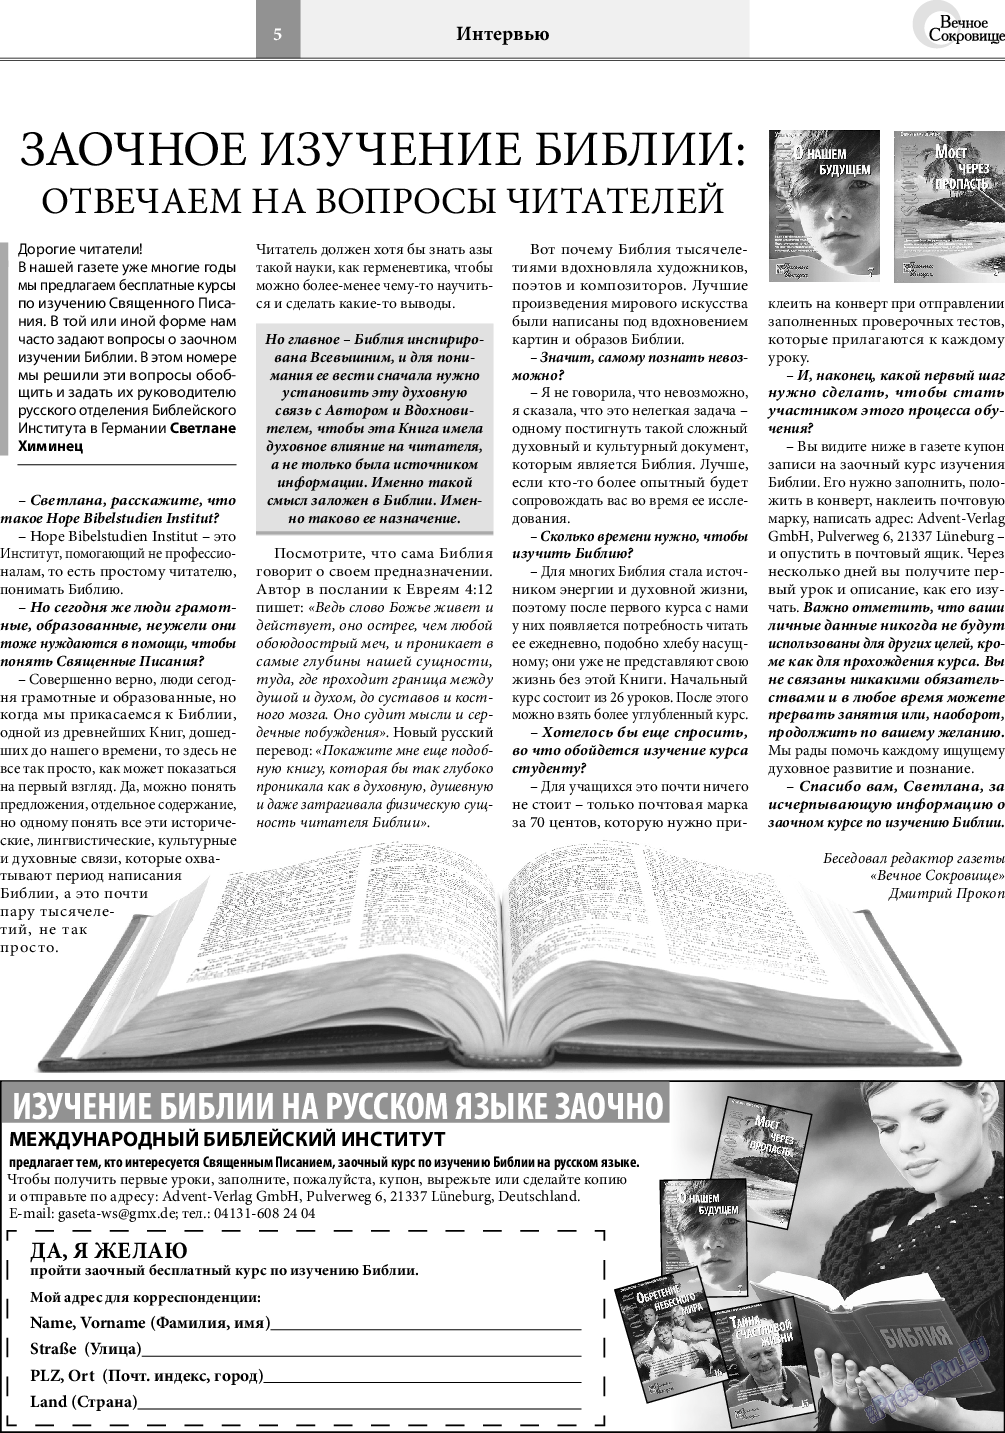 Вечное сокровище, газета. 2019 №3 стр.5